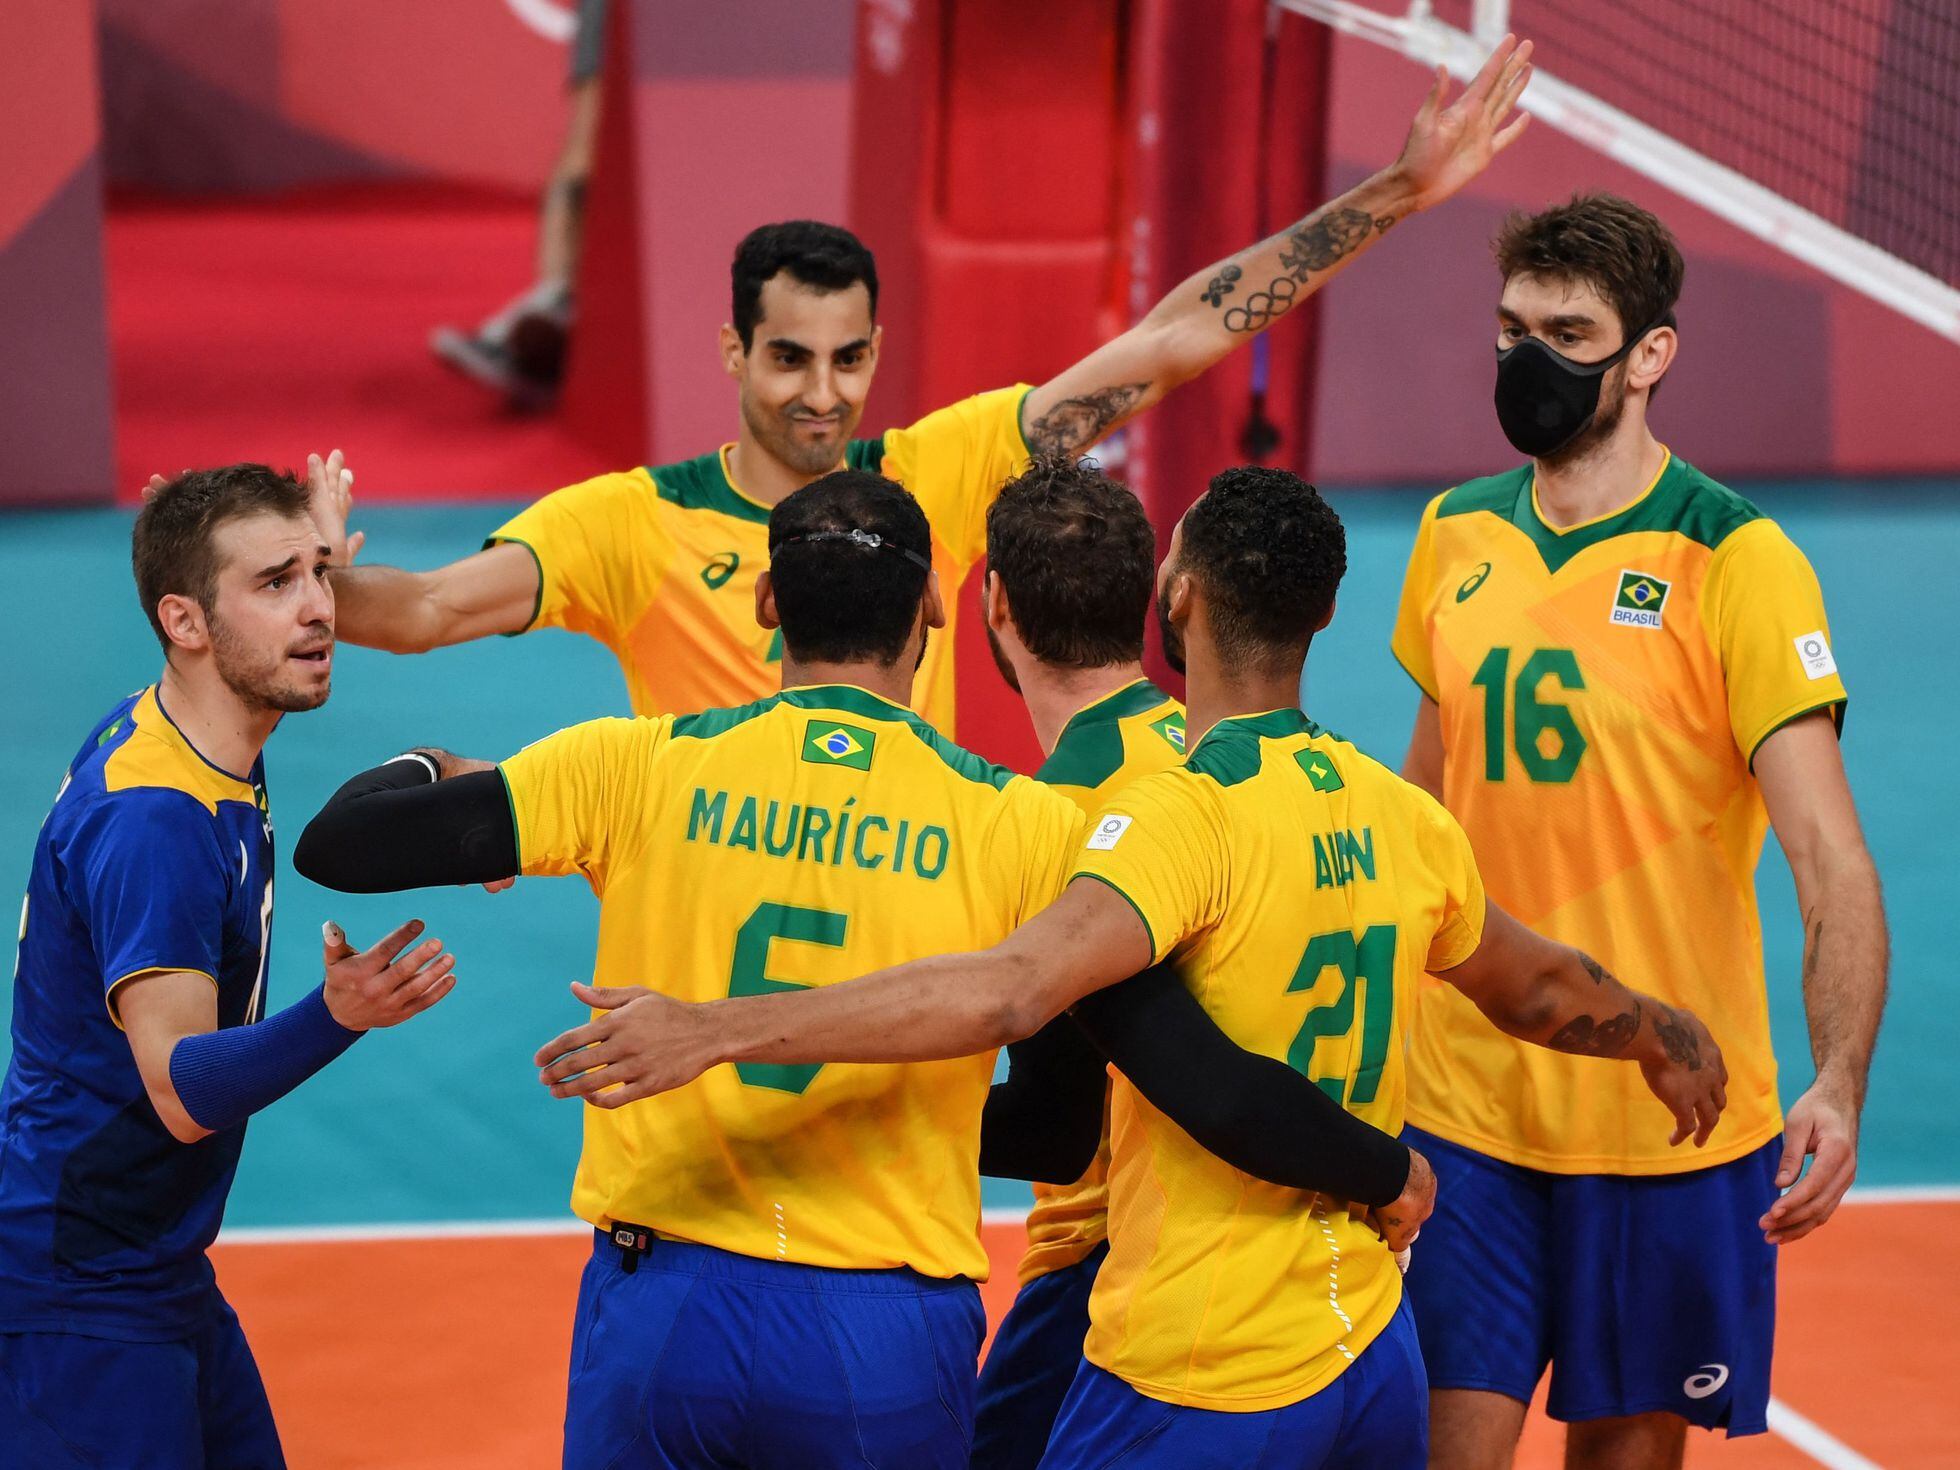 Tênis do Brasil estreia neste sábado (24) nos Jogos de Tóquio